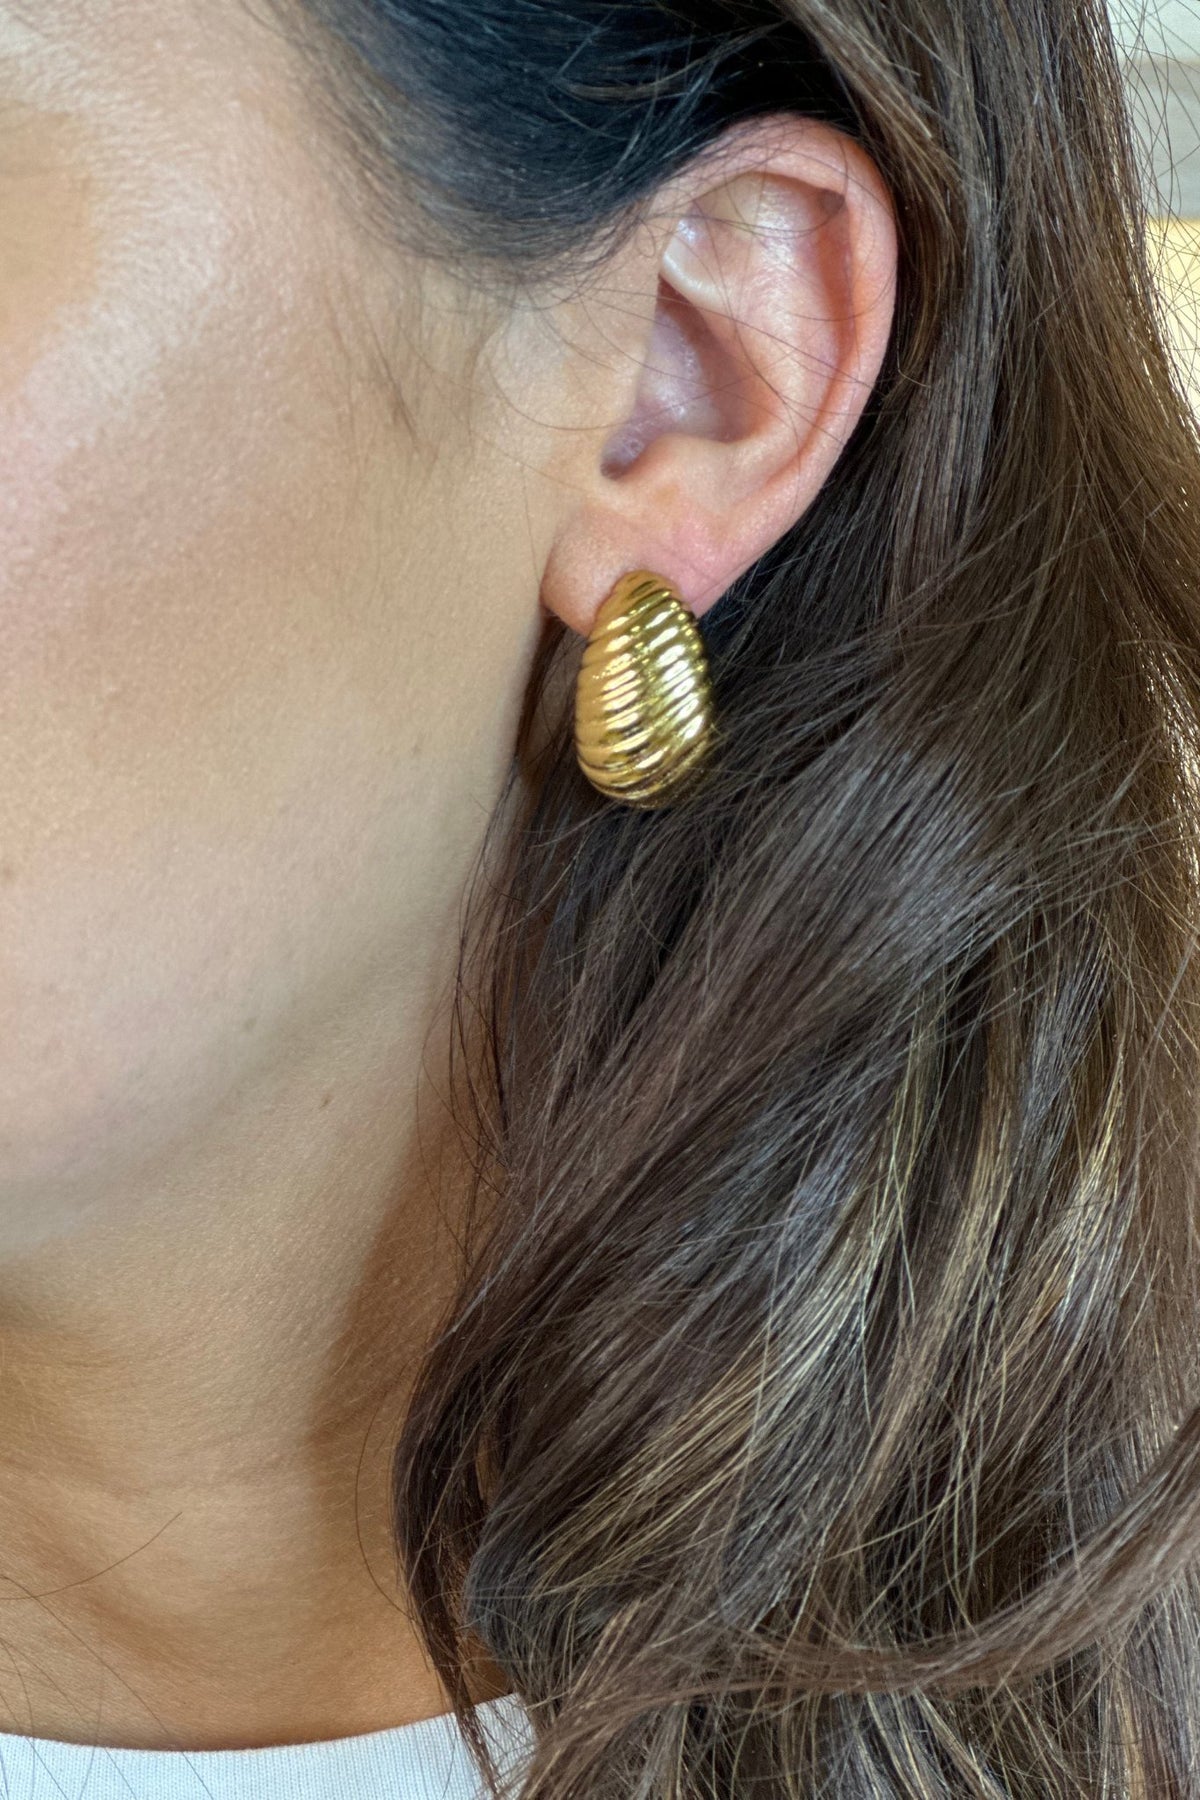 Erin Ridged Earring In Gold - The Walk in Wardrobe